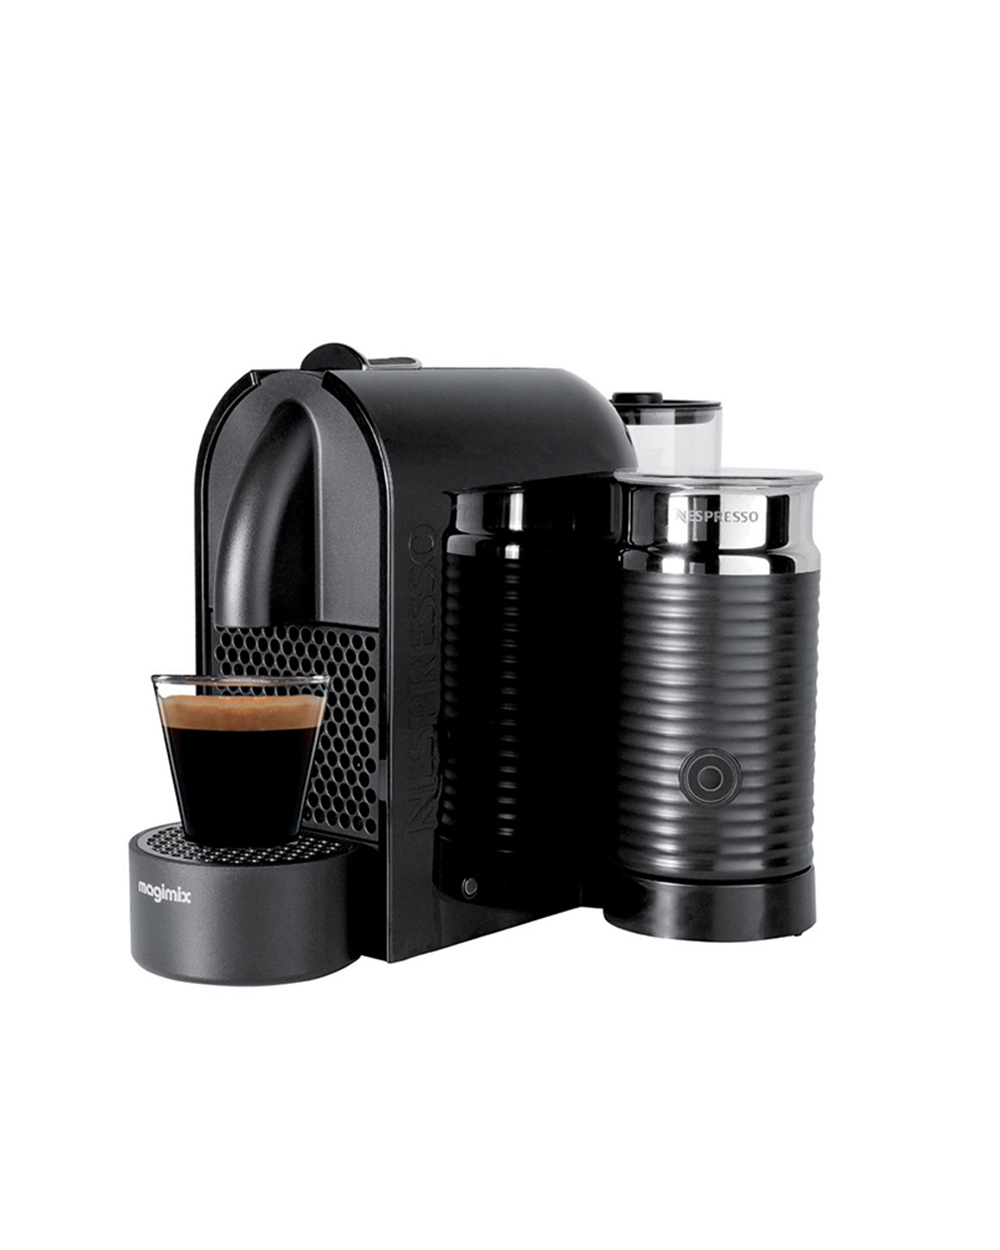 Nespresso U Milk coffee machine, $379.